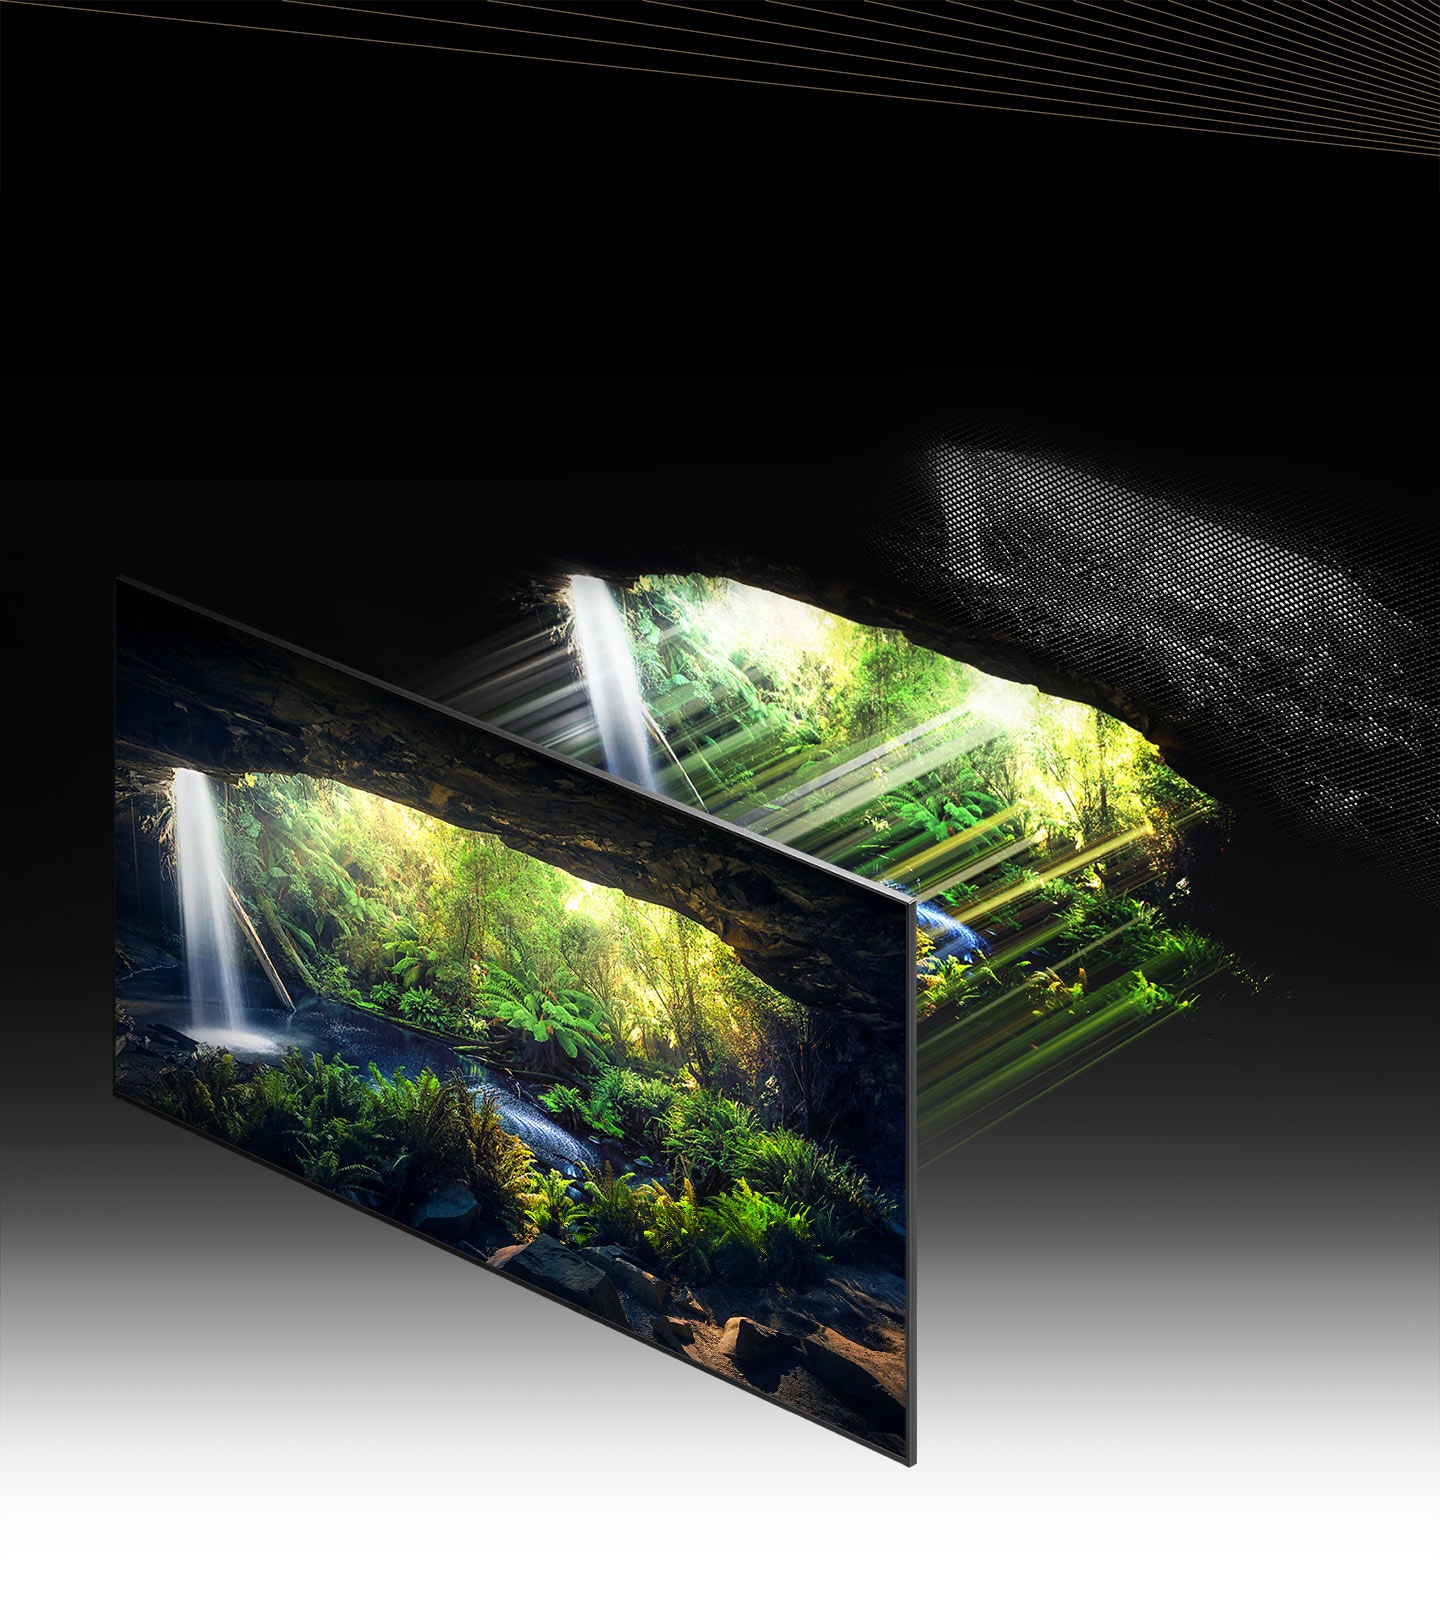 Prek LED -ja Quantum Mini in mikroplasta je čudovit gozdni zaslon, viden v notranjosti jame, podrobno prikazan na svetlih in temnih območjih, kar se zelo jasno prikazuje.